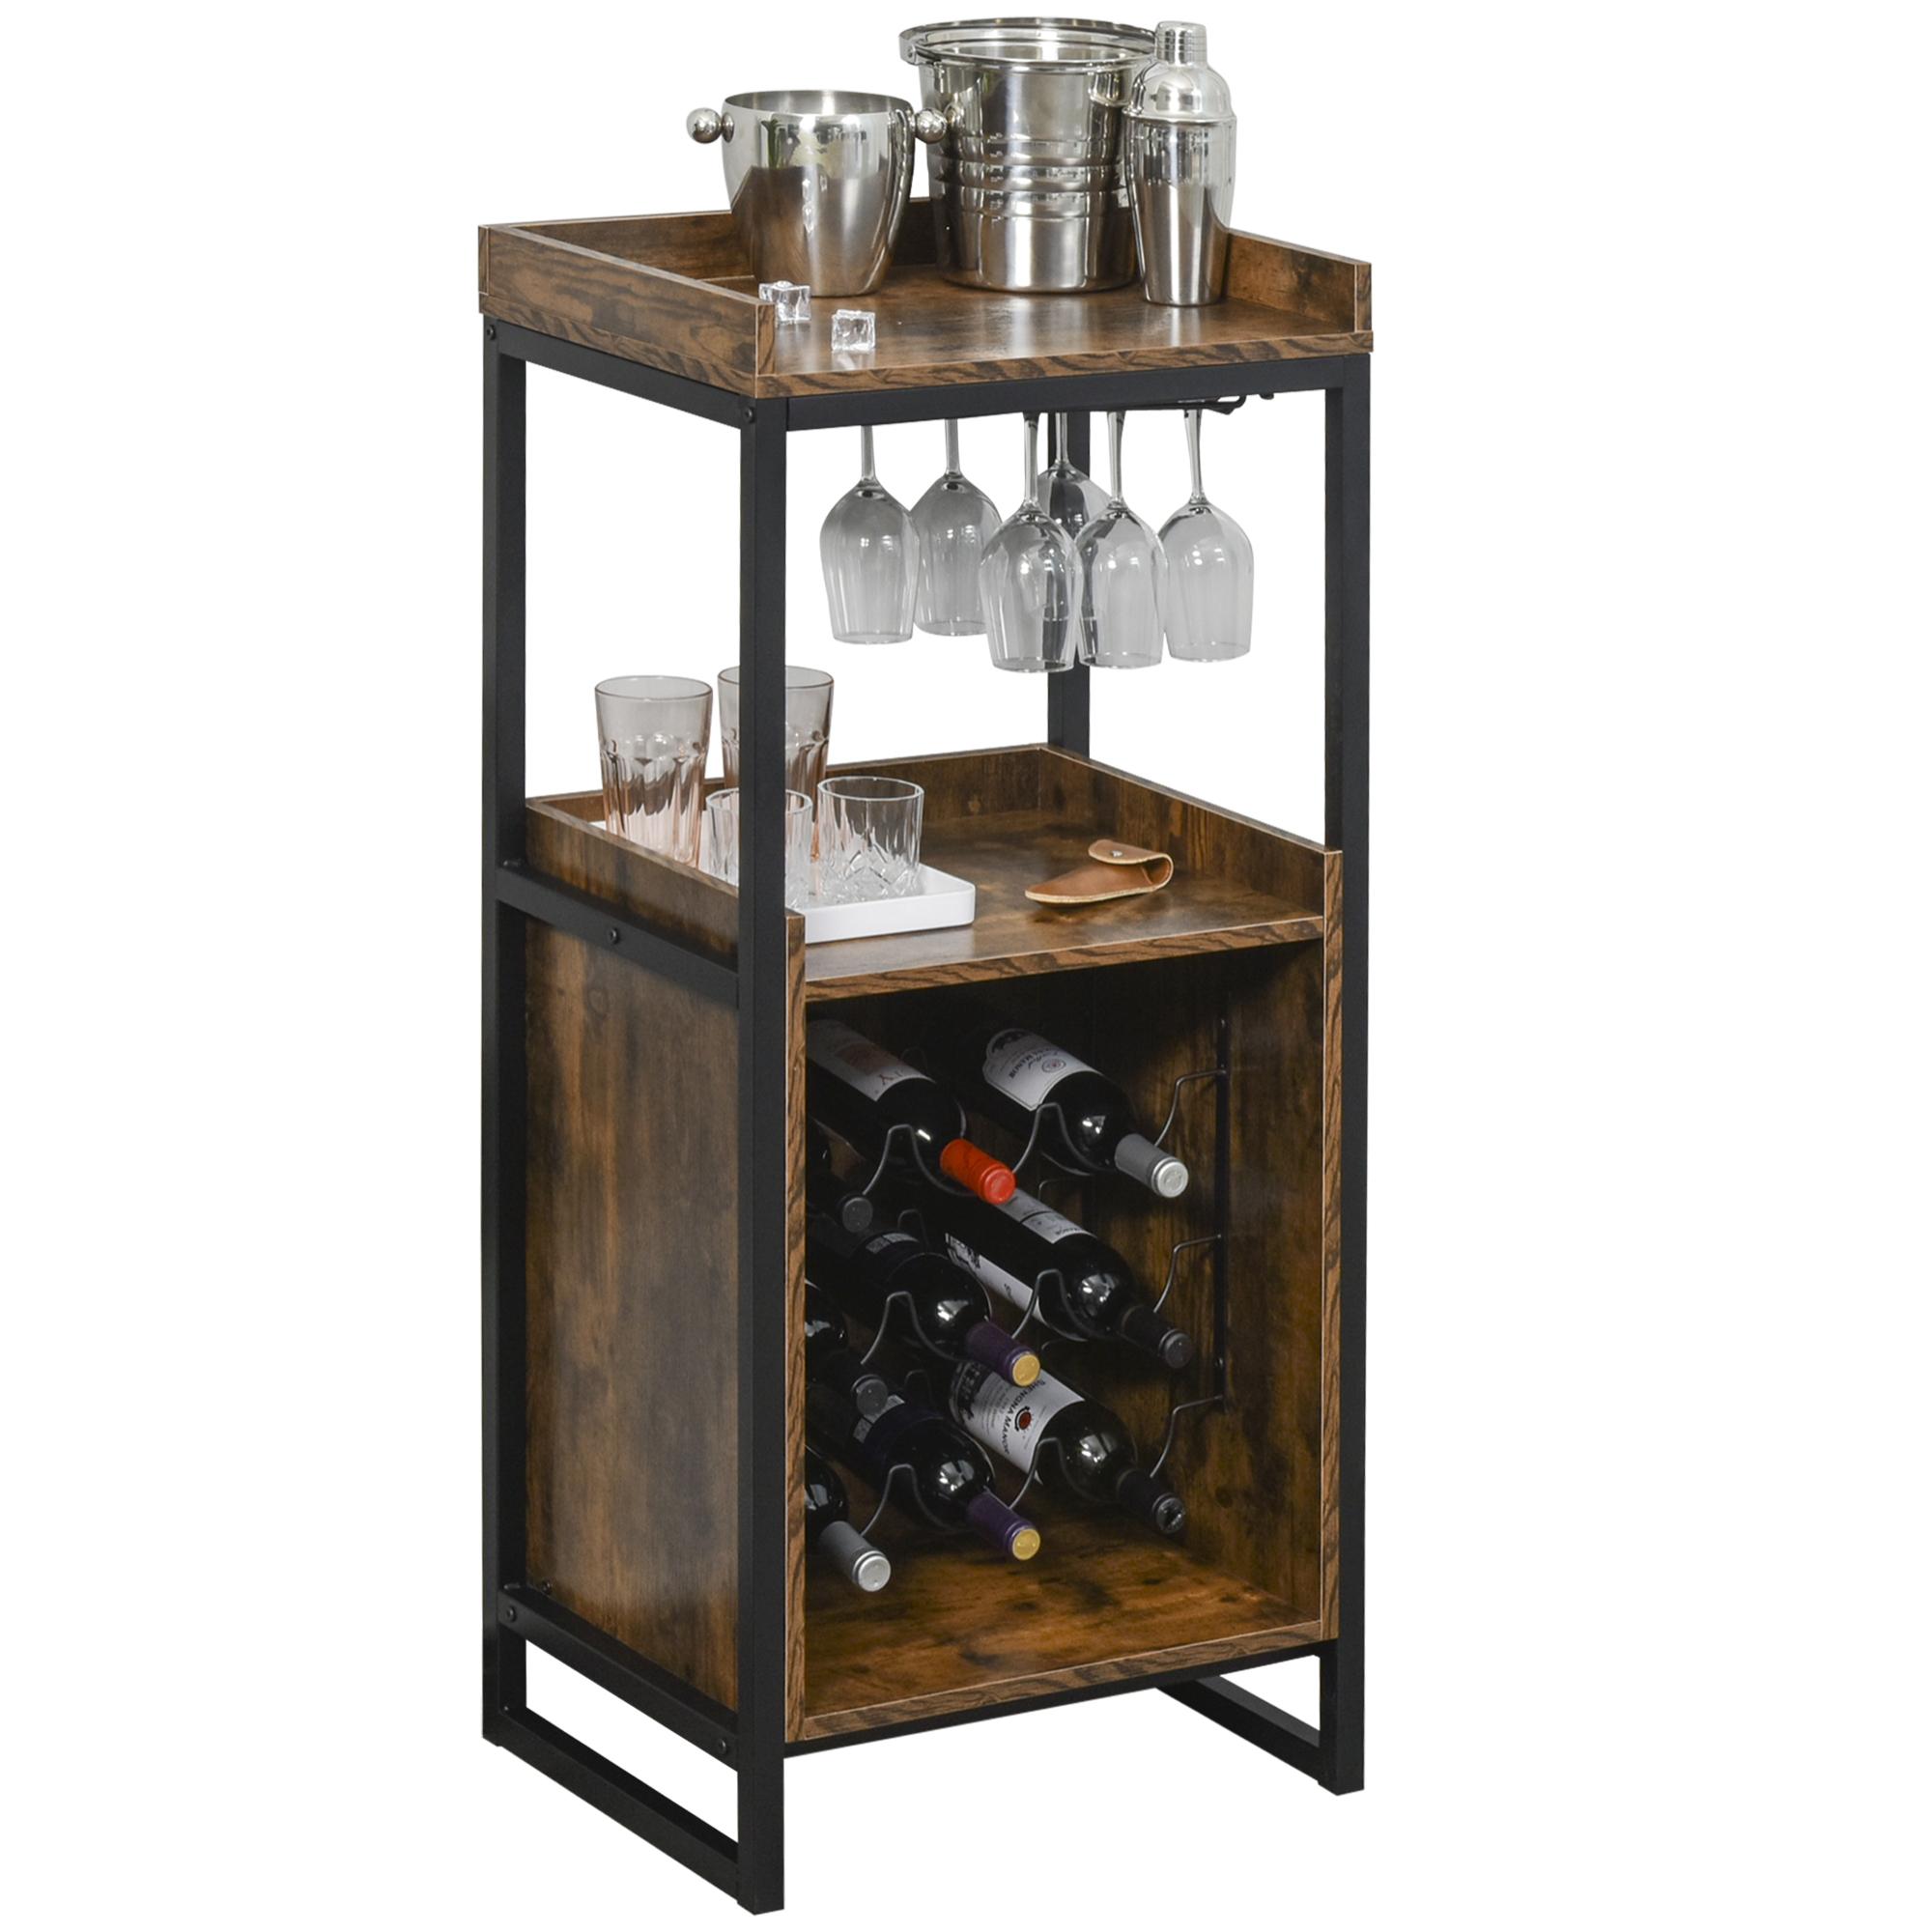 Casier à vin design industriel étagère à bouteilles 9 bouteilles support verres à vin intégré métal noir aspect vieux bois veinage